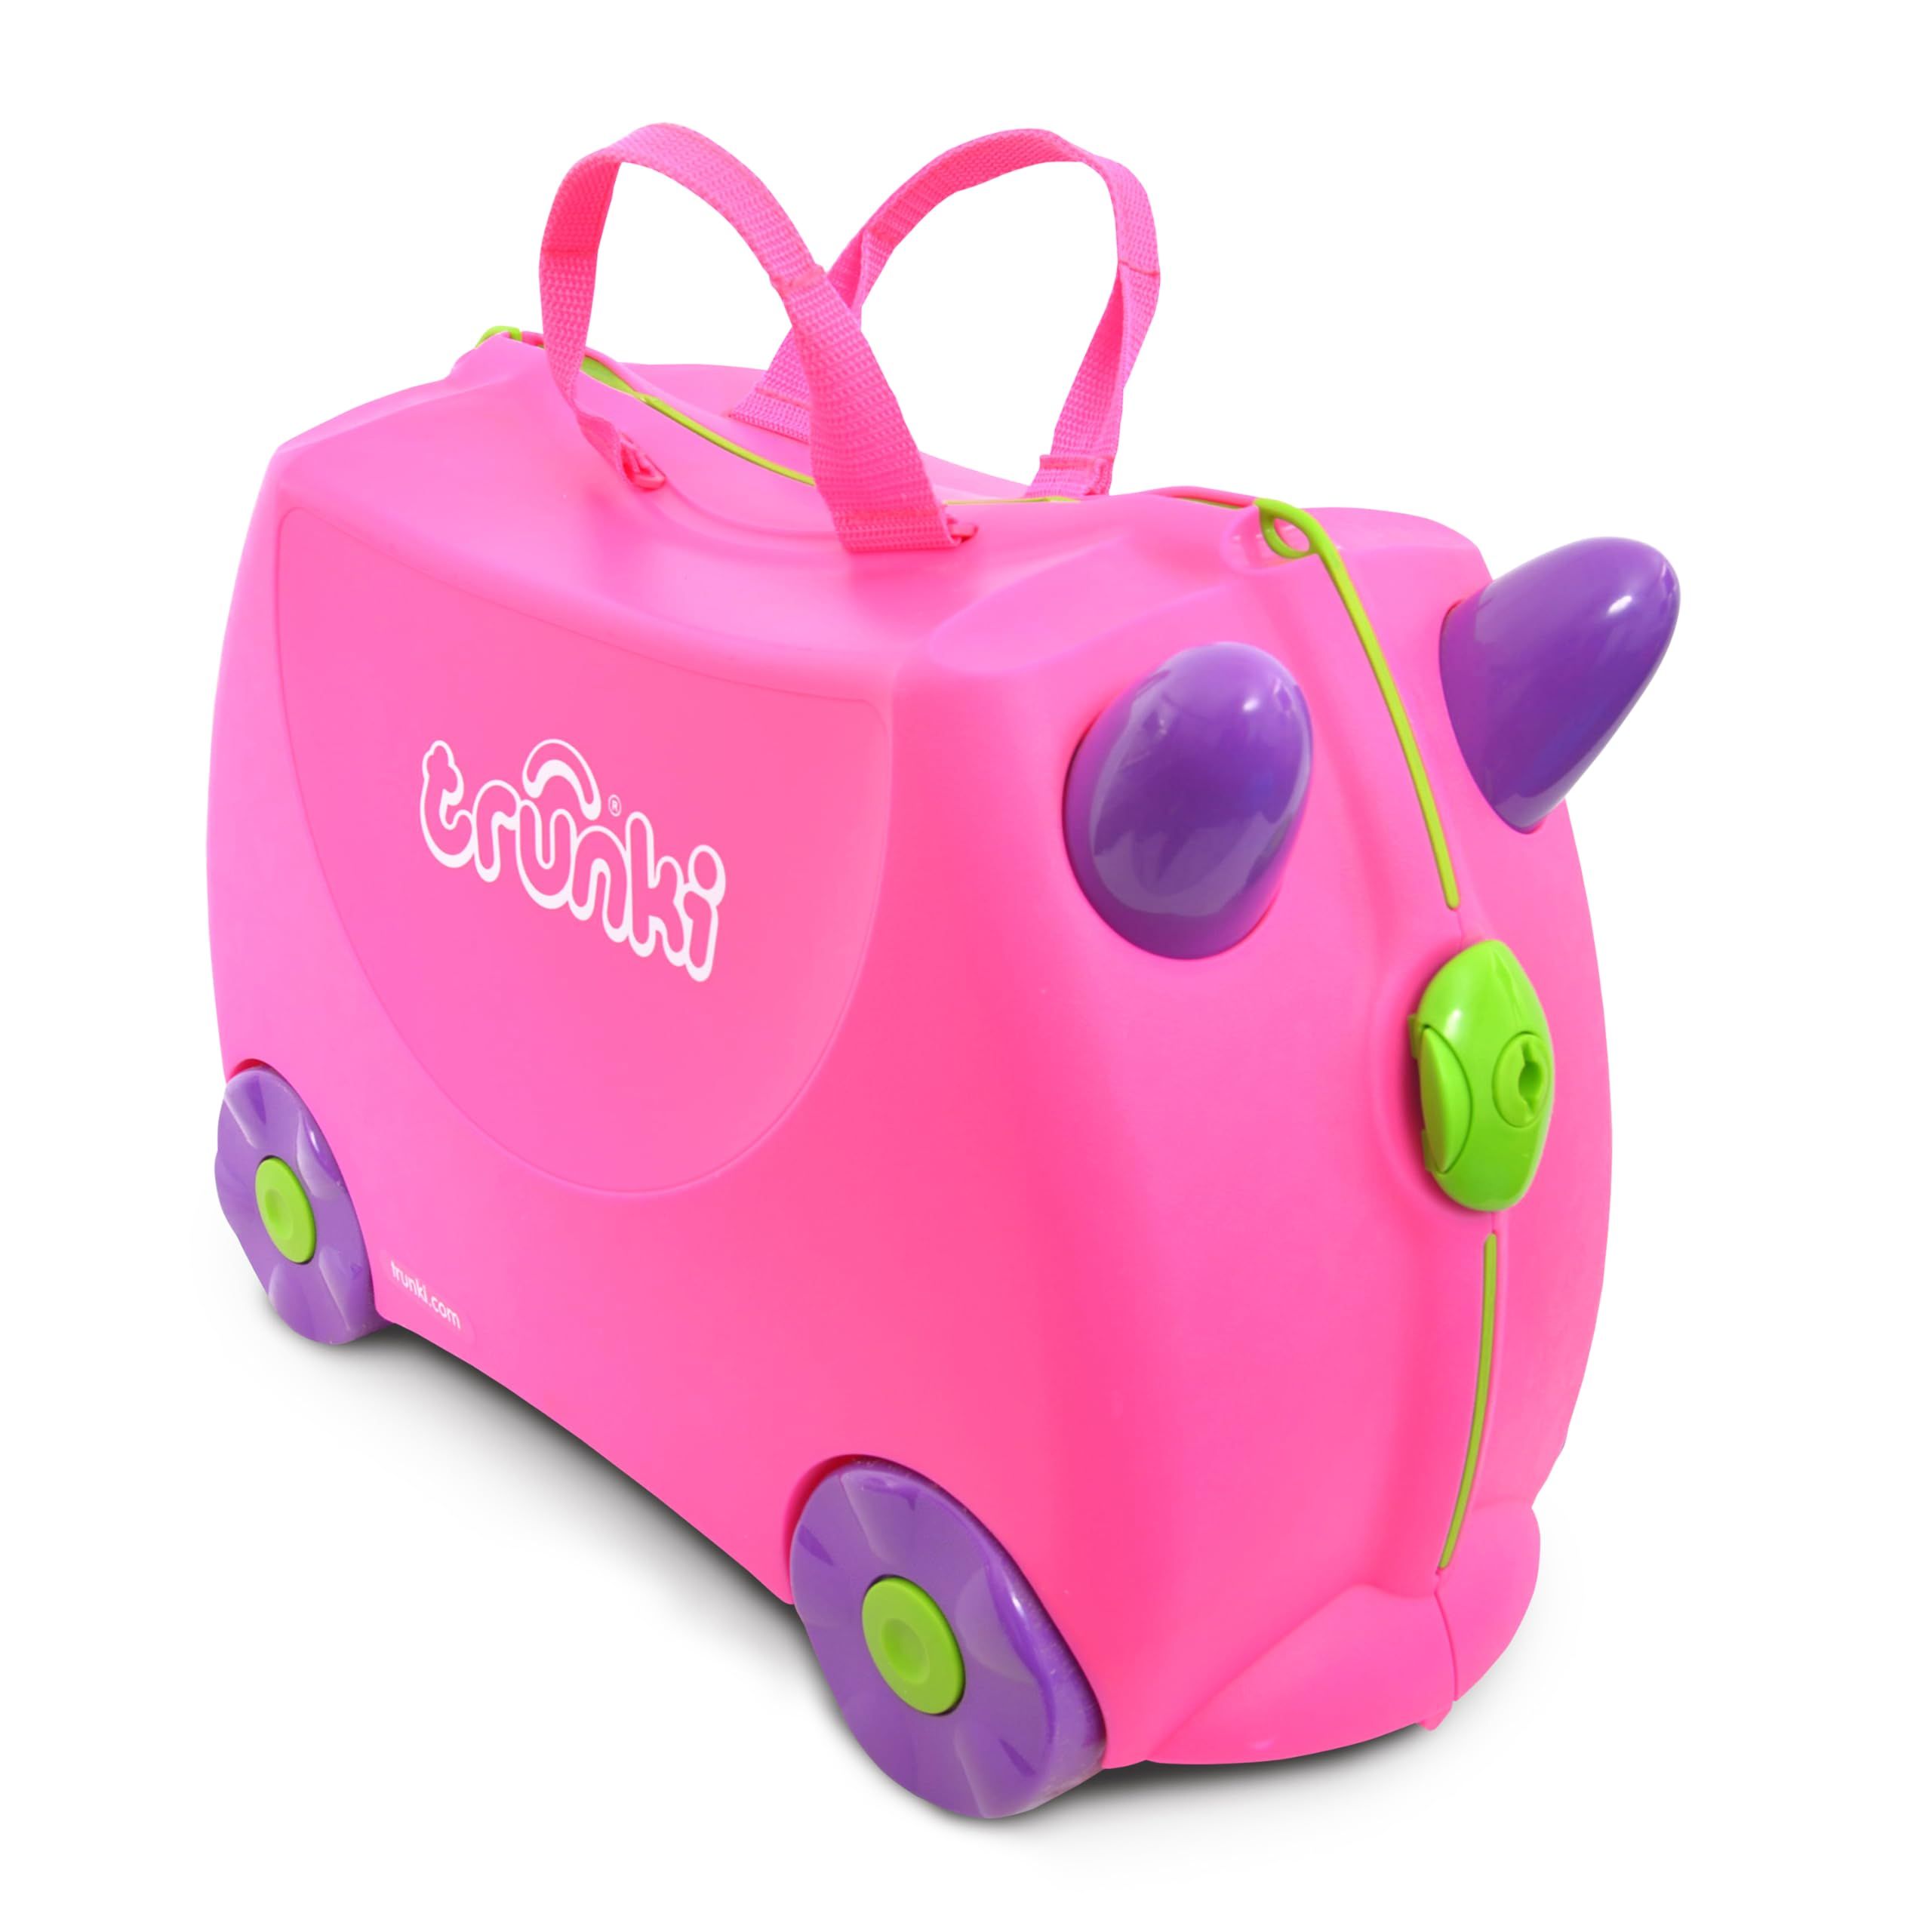 Trunki Handgepäck und Kinderkoffer zum Draufsitzen | Kinder Risen Geschenk für Mädchen und Jun... | Amazon (DE)